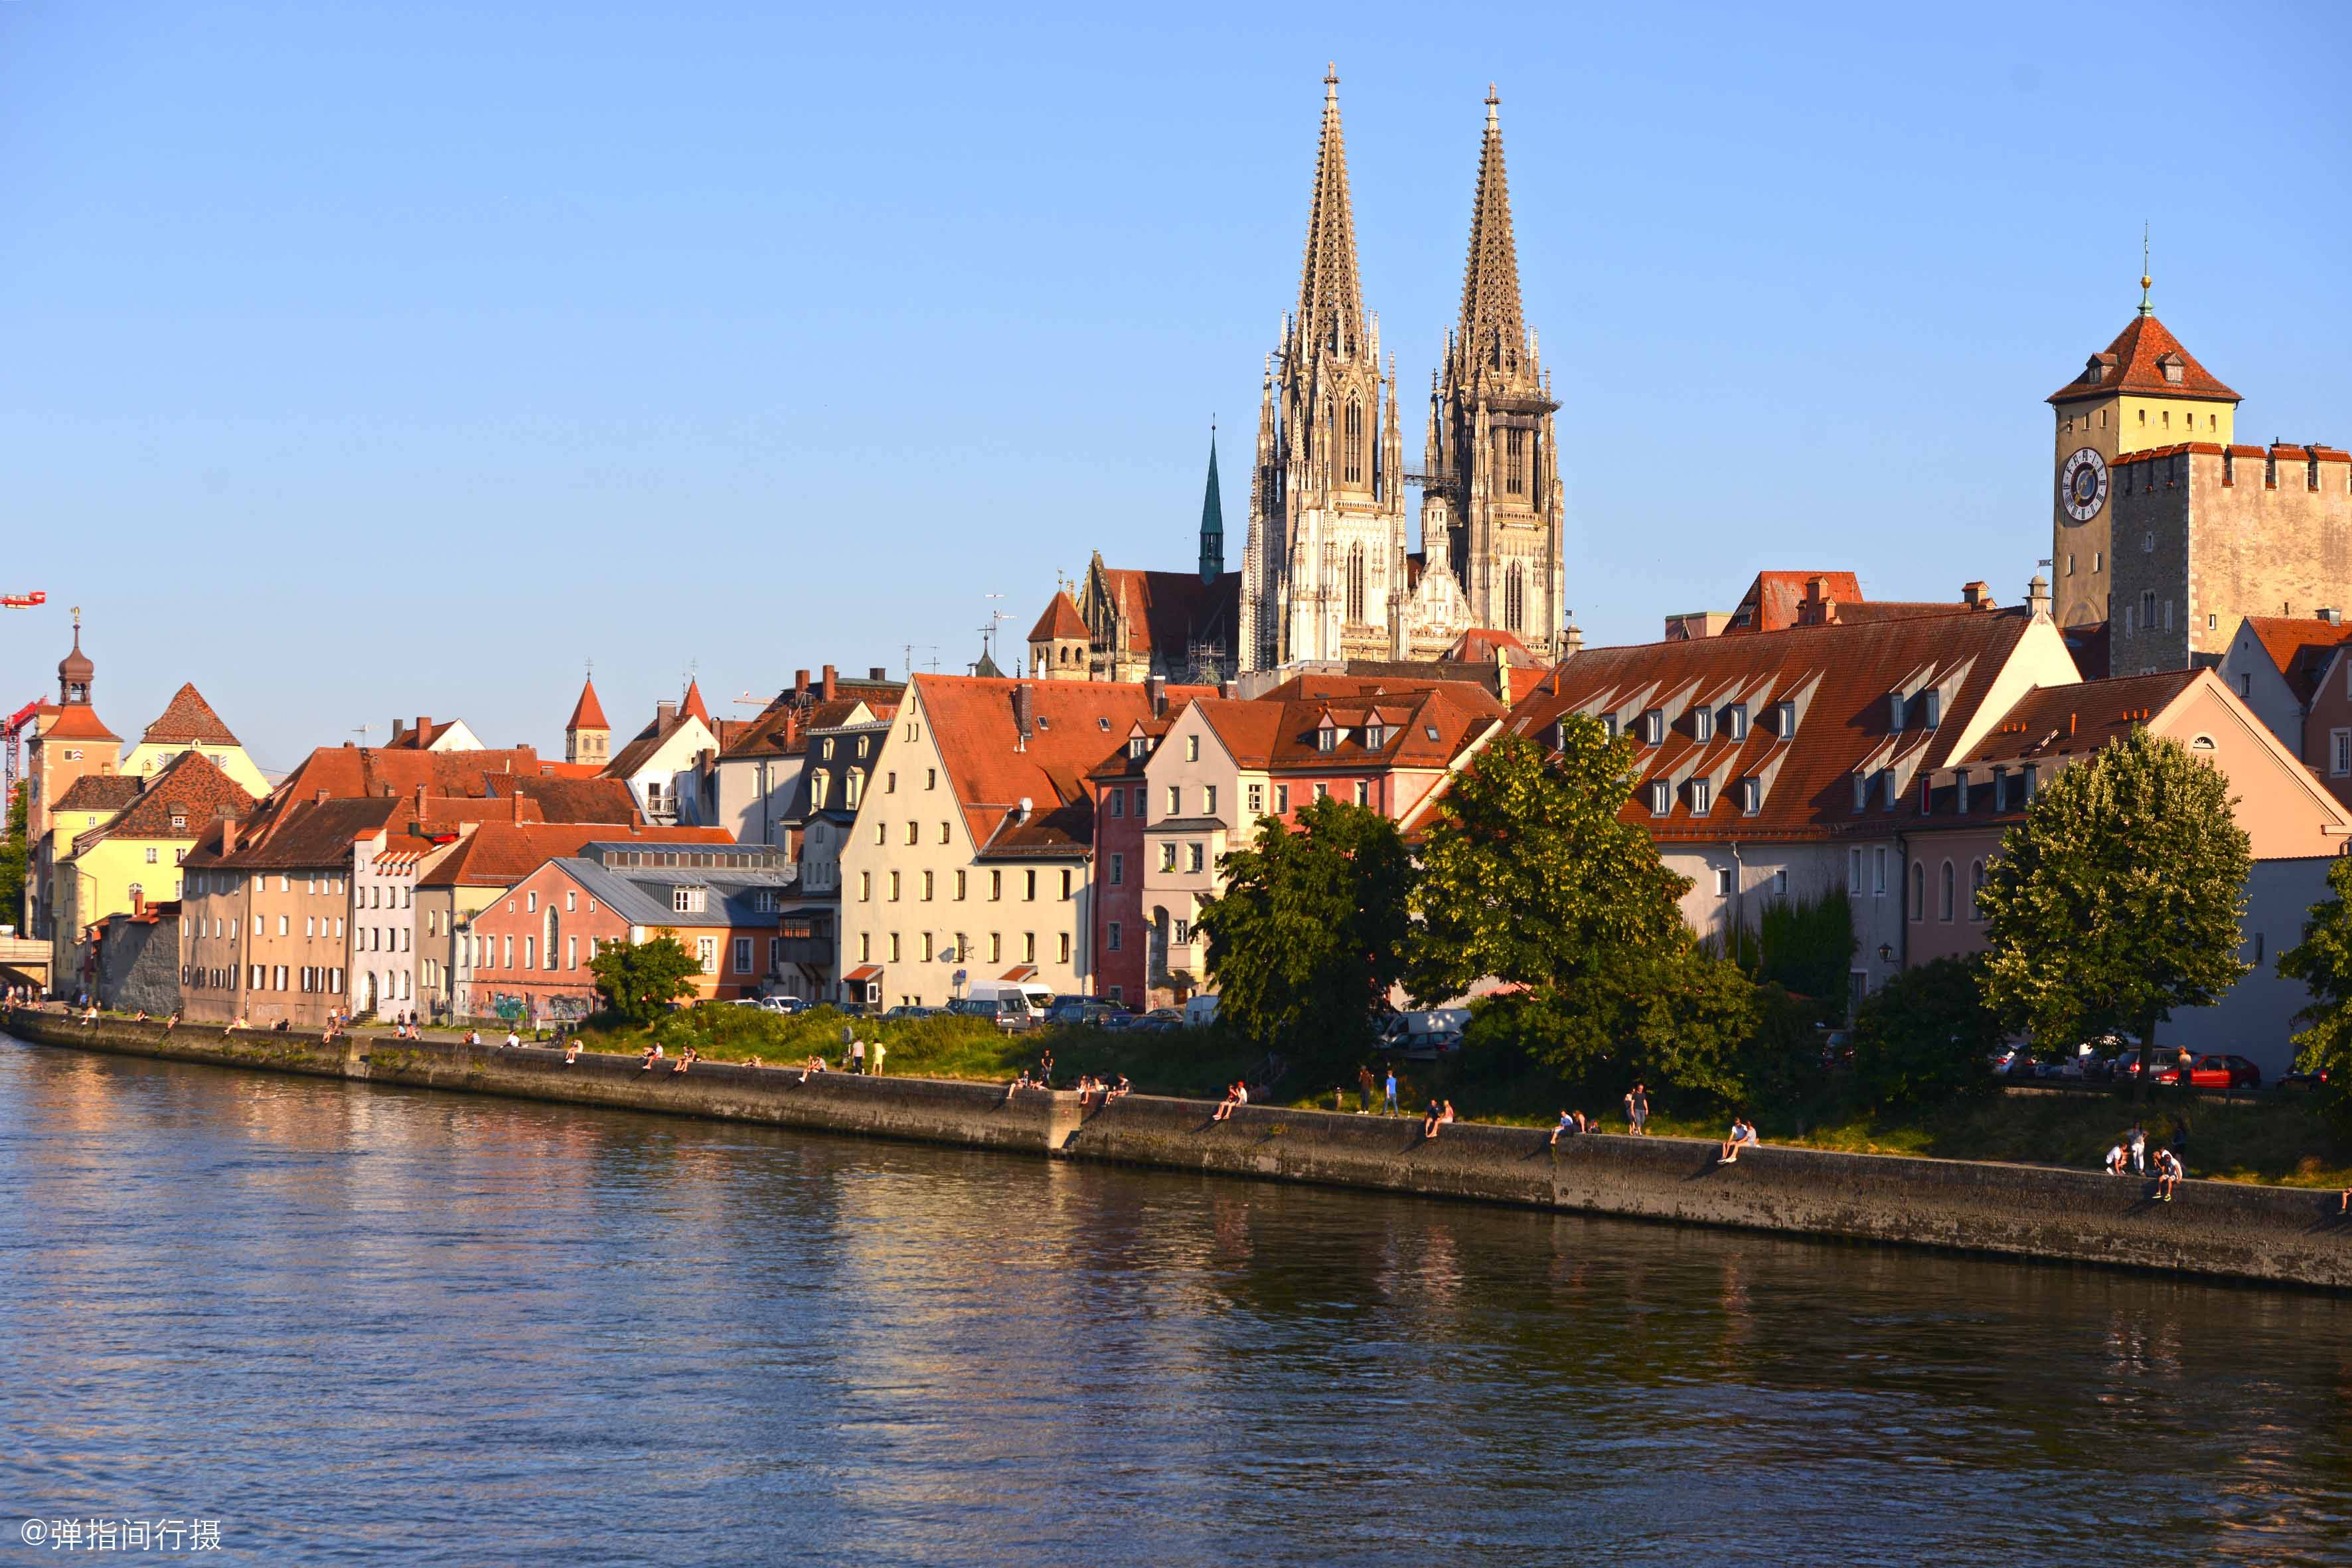 德国最古老的城市,号称多瑙河明珠,满城中世纪古韵历久弥新